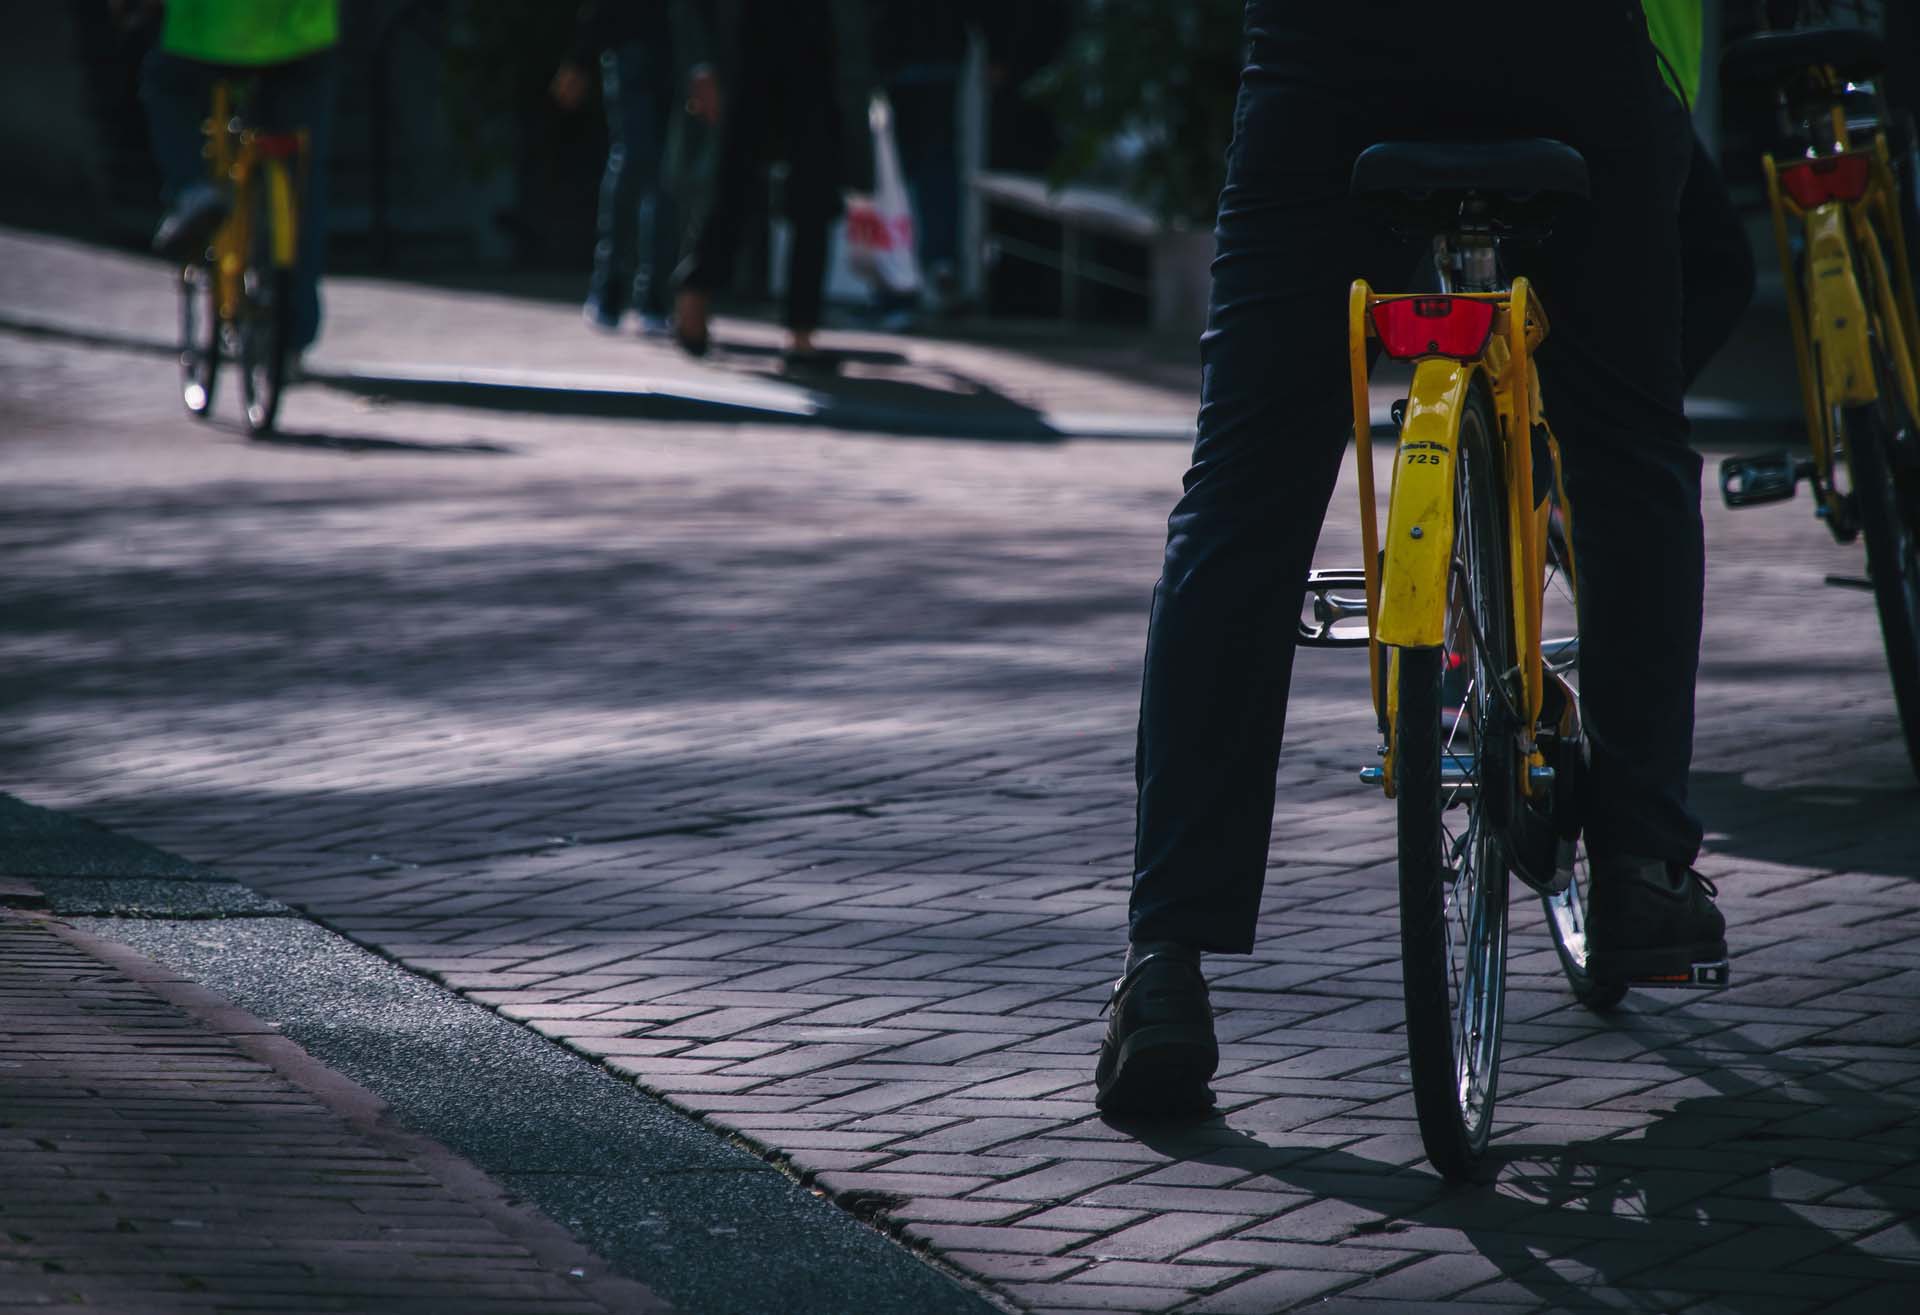 Bike riders peddling down the street represented Biker-centered design in Denmark